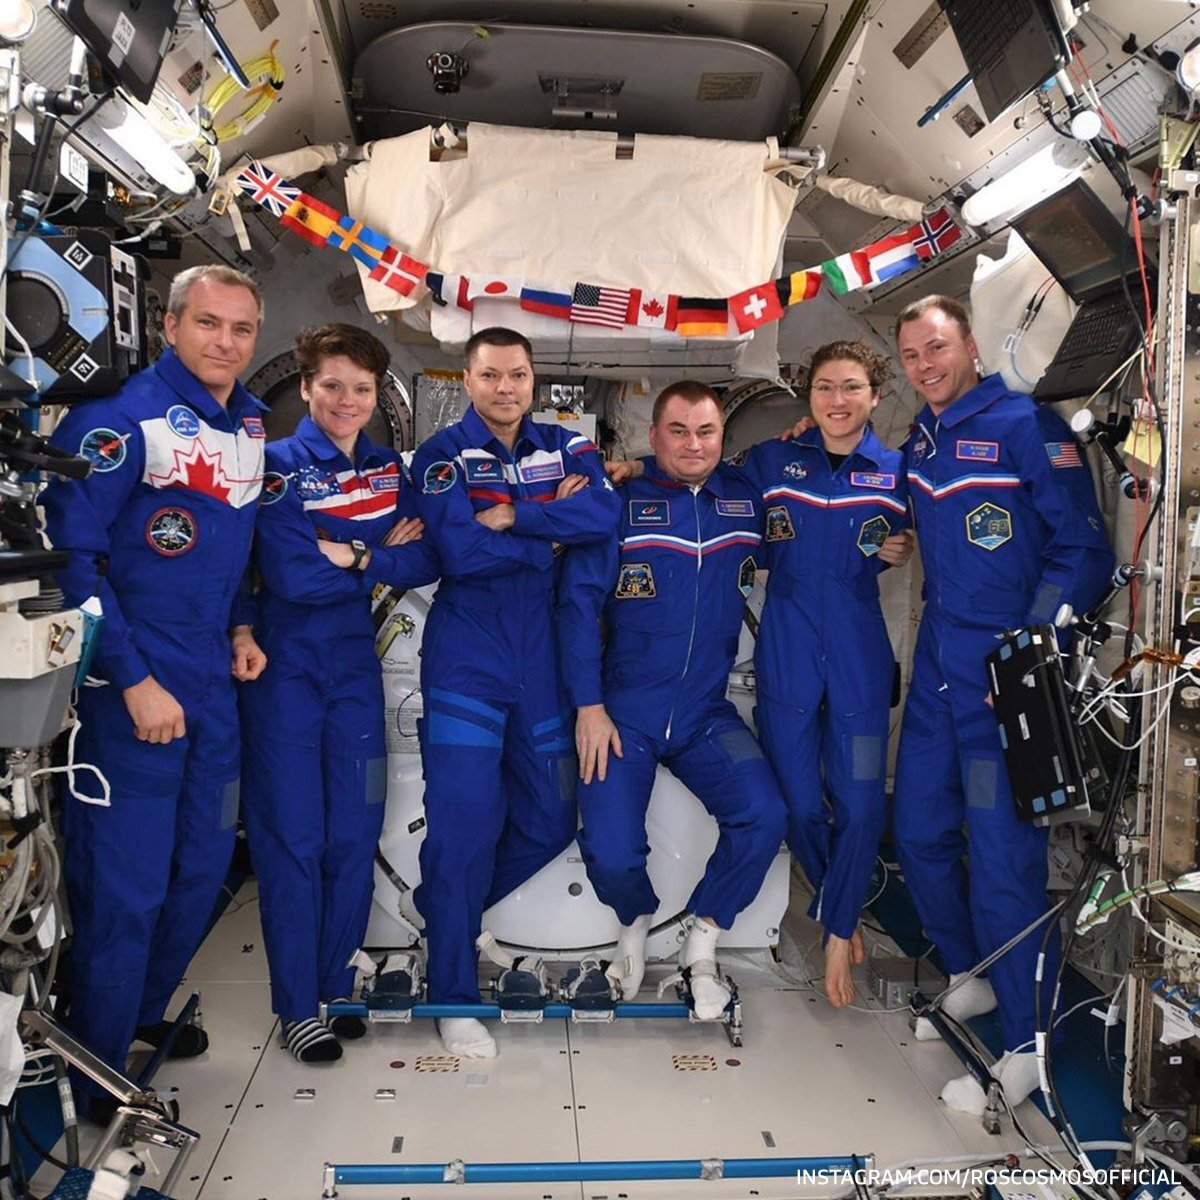 Сколько станций в космосе сейчас. Экипаж МКС. Станция МКС. Современные космонавты. Международный экипаж МКС.